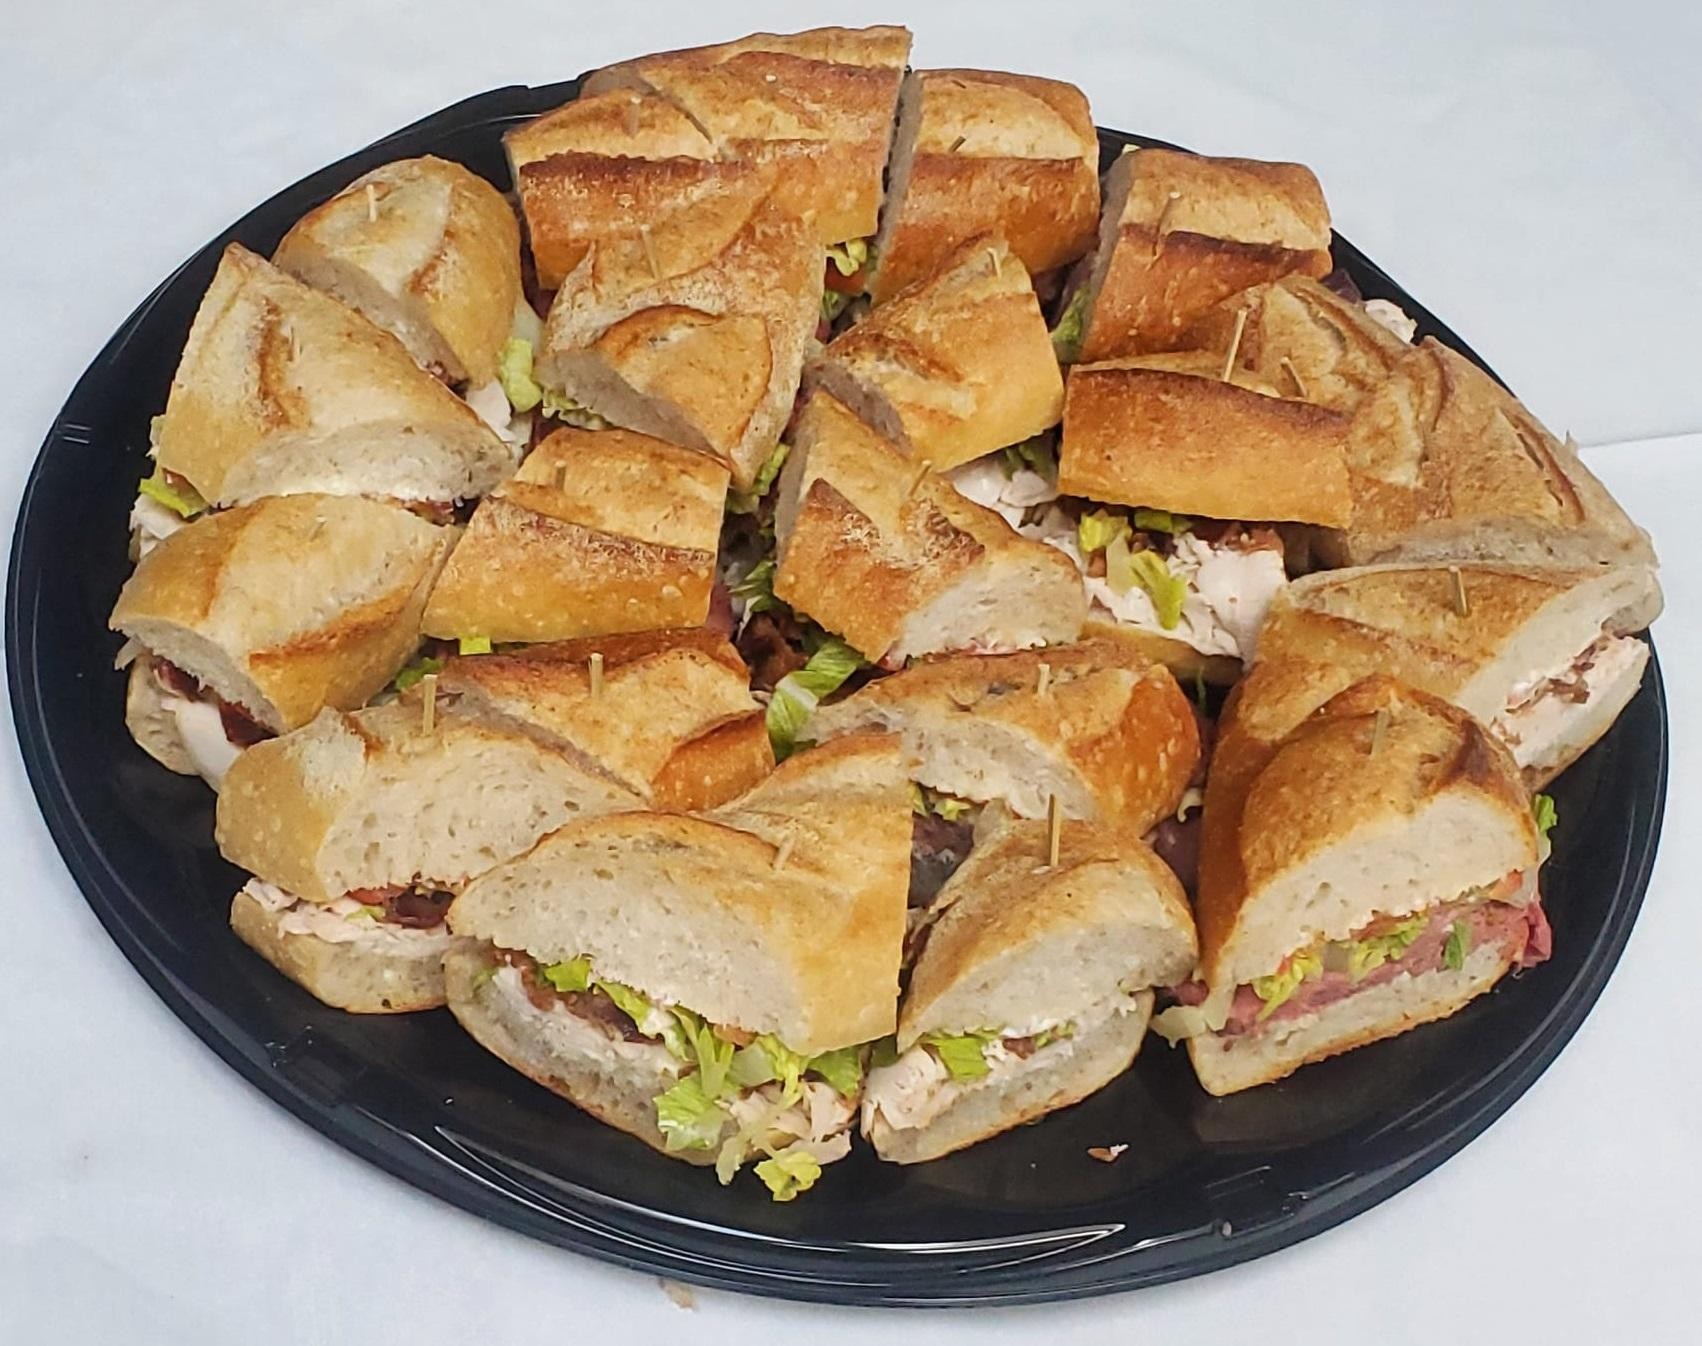 Cold Mixed Sandwich Platter